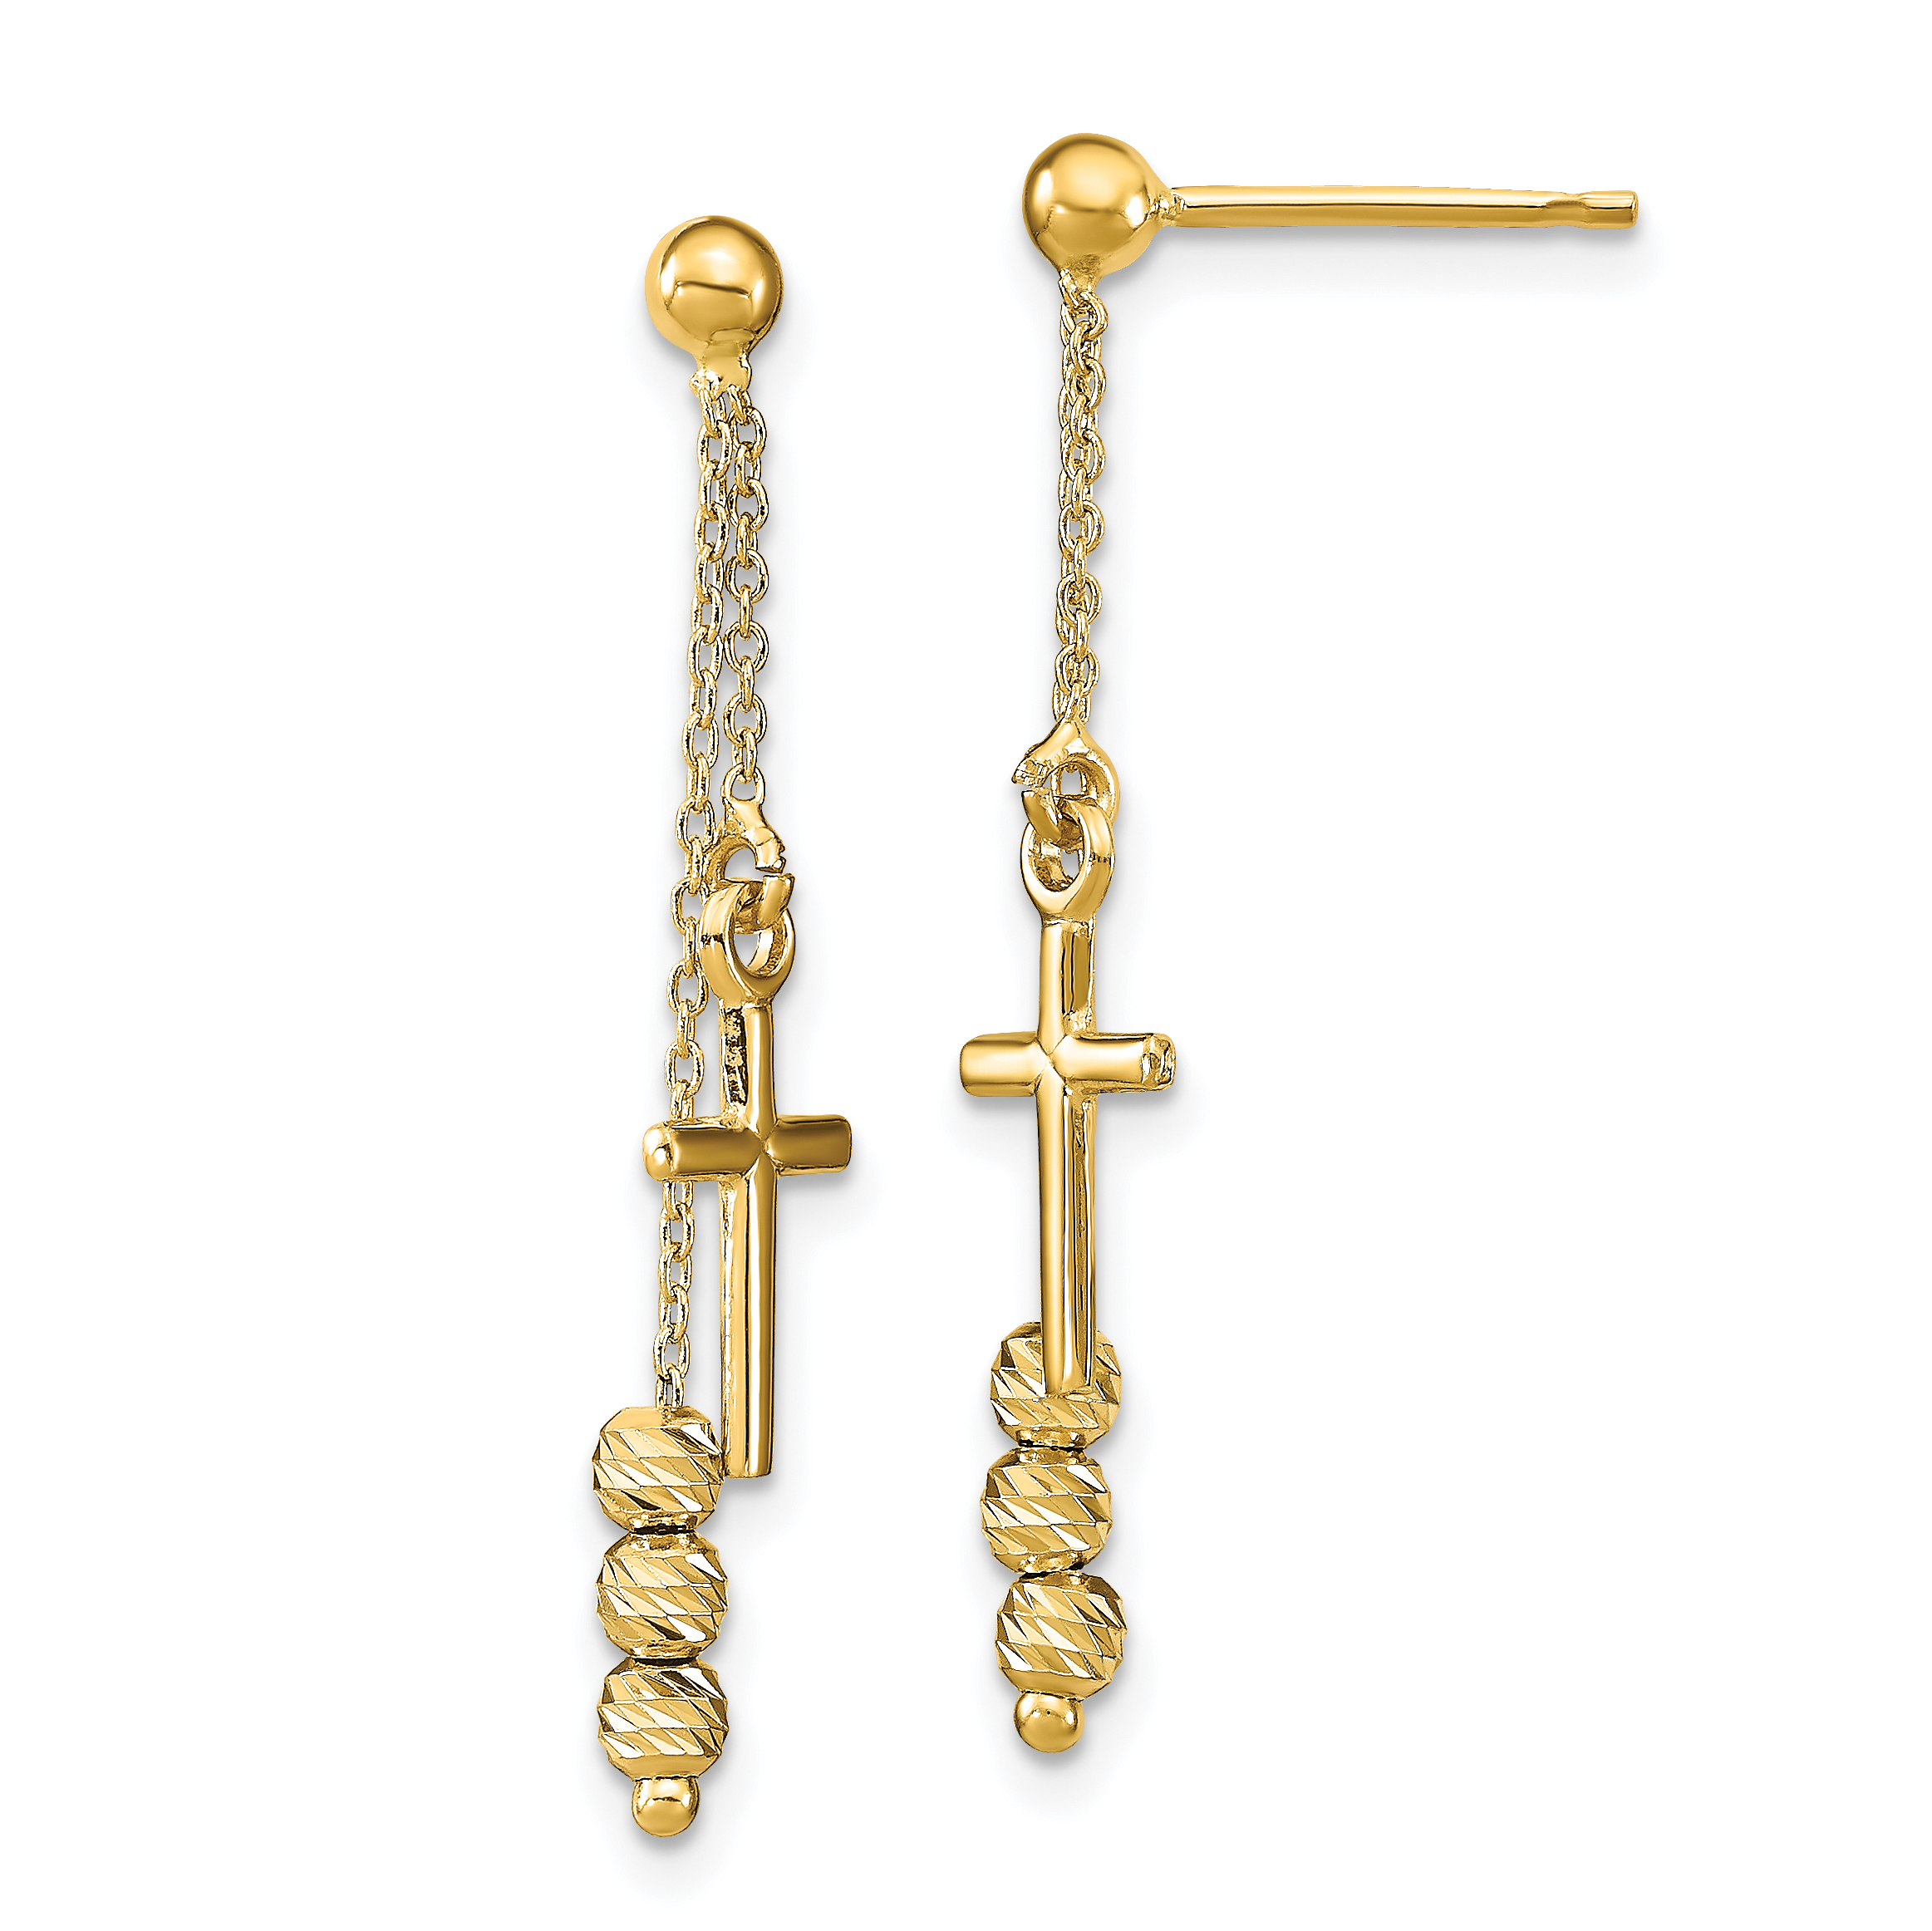 Buy Sarah Stainless Steel Cross Dangle Huggie Hinged Hoop Stud Earrings for  Men and Women at Amazon.in